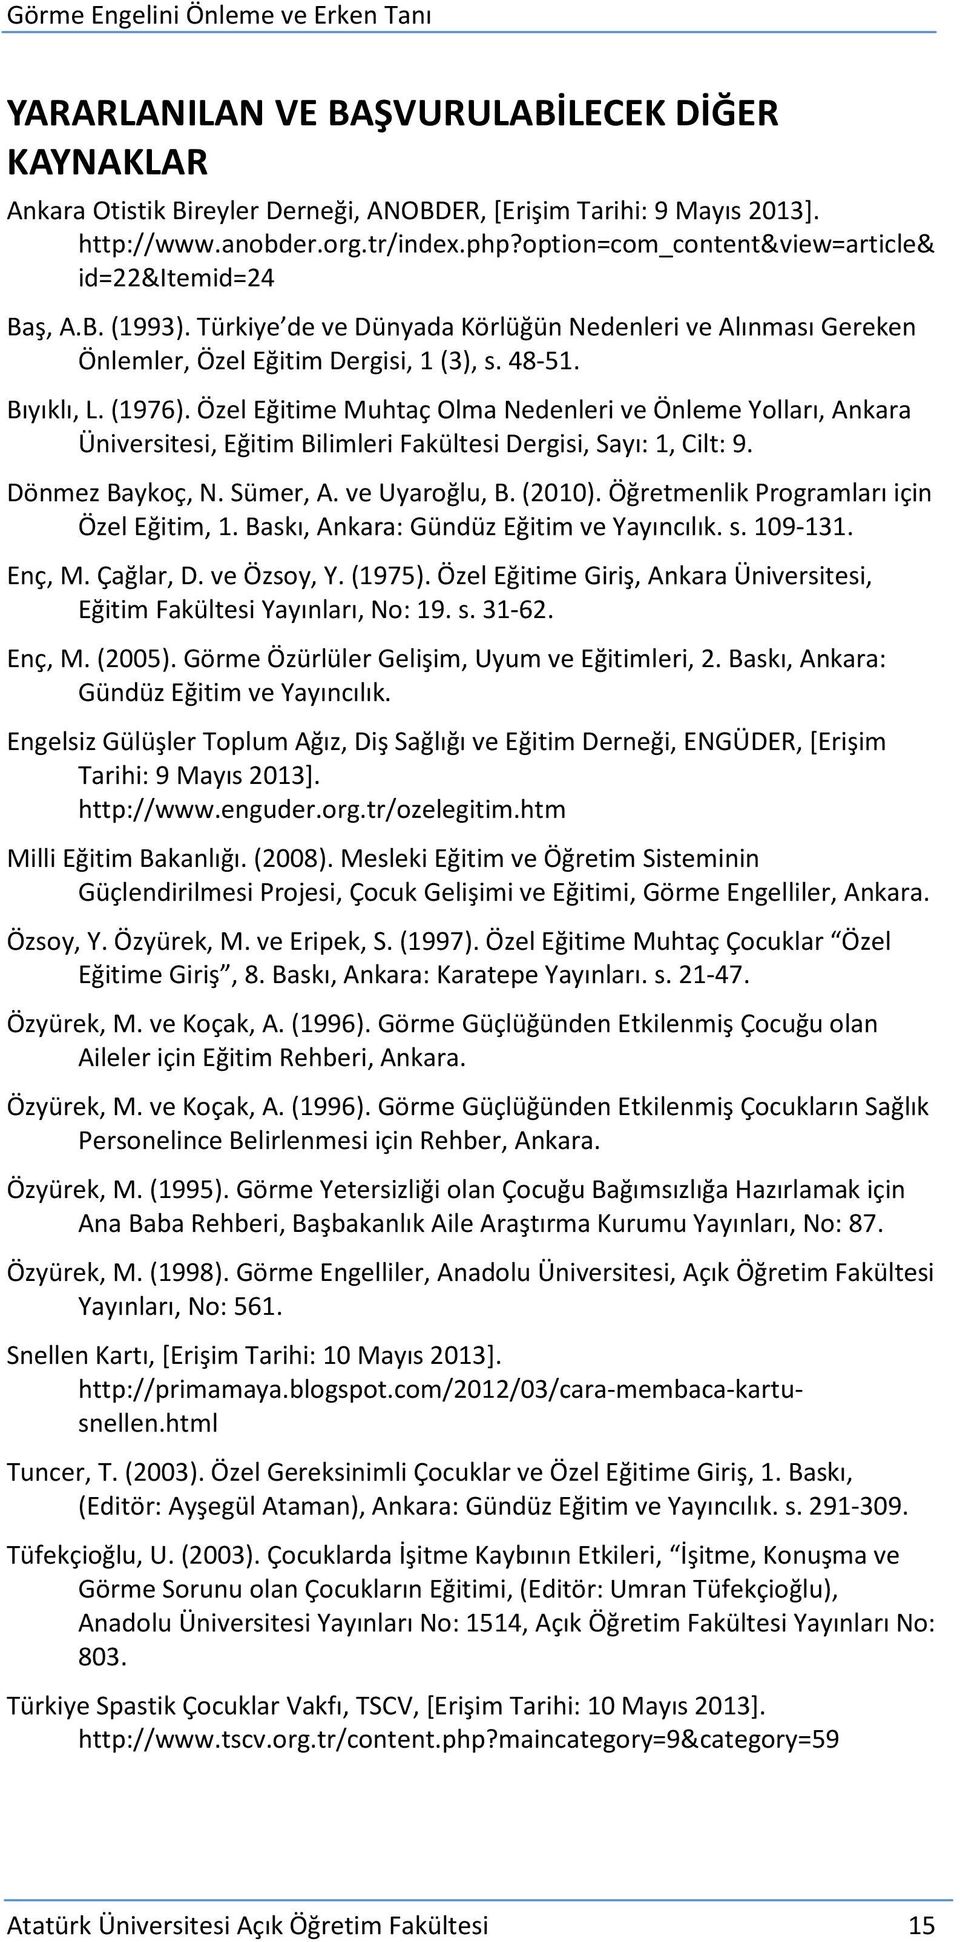 Özel Eğitime Muhtaç Olma Nedenleri ve Önleme Yolları, Ankara Üniversitesi, Eğitim Bilimleri Fakültesi Dergisi, Sayı: 1, Cilt: 9. Dönmez Baykoç, N. Sümer, A. ve Uyaroğlu, B. (2010).